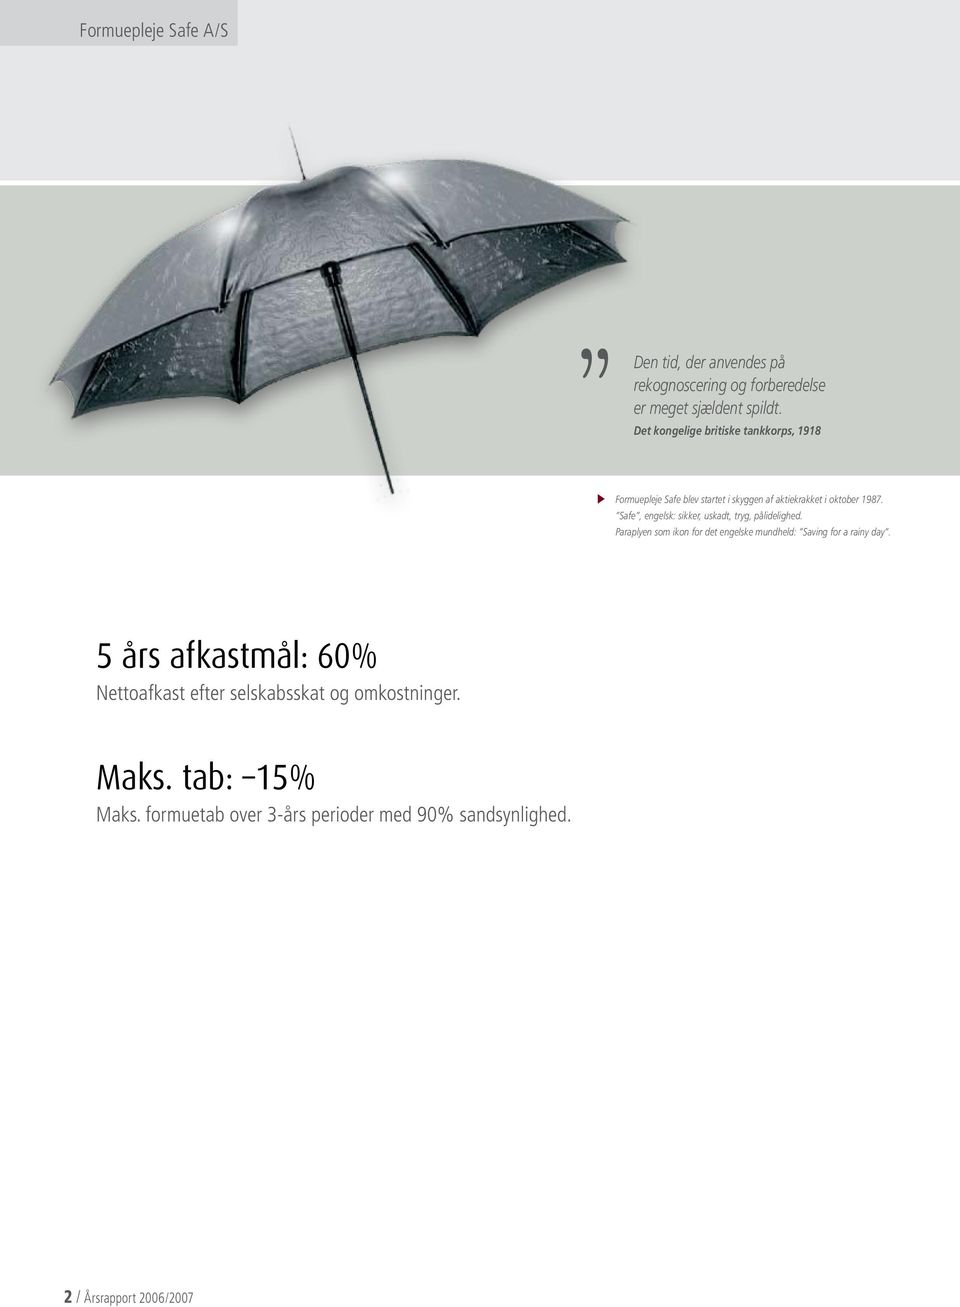 Safe, engelsk: sikker, uskadt, tryg, pålidelighed. Paraplyen som ikon for det engelske mundheld: Saving for a rainy day.